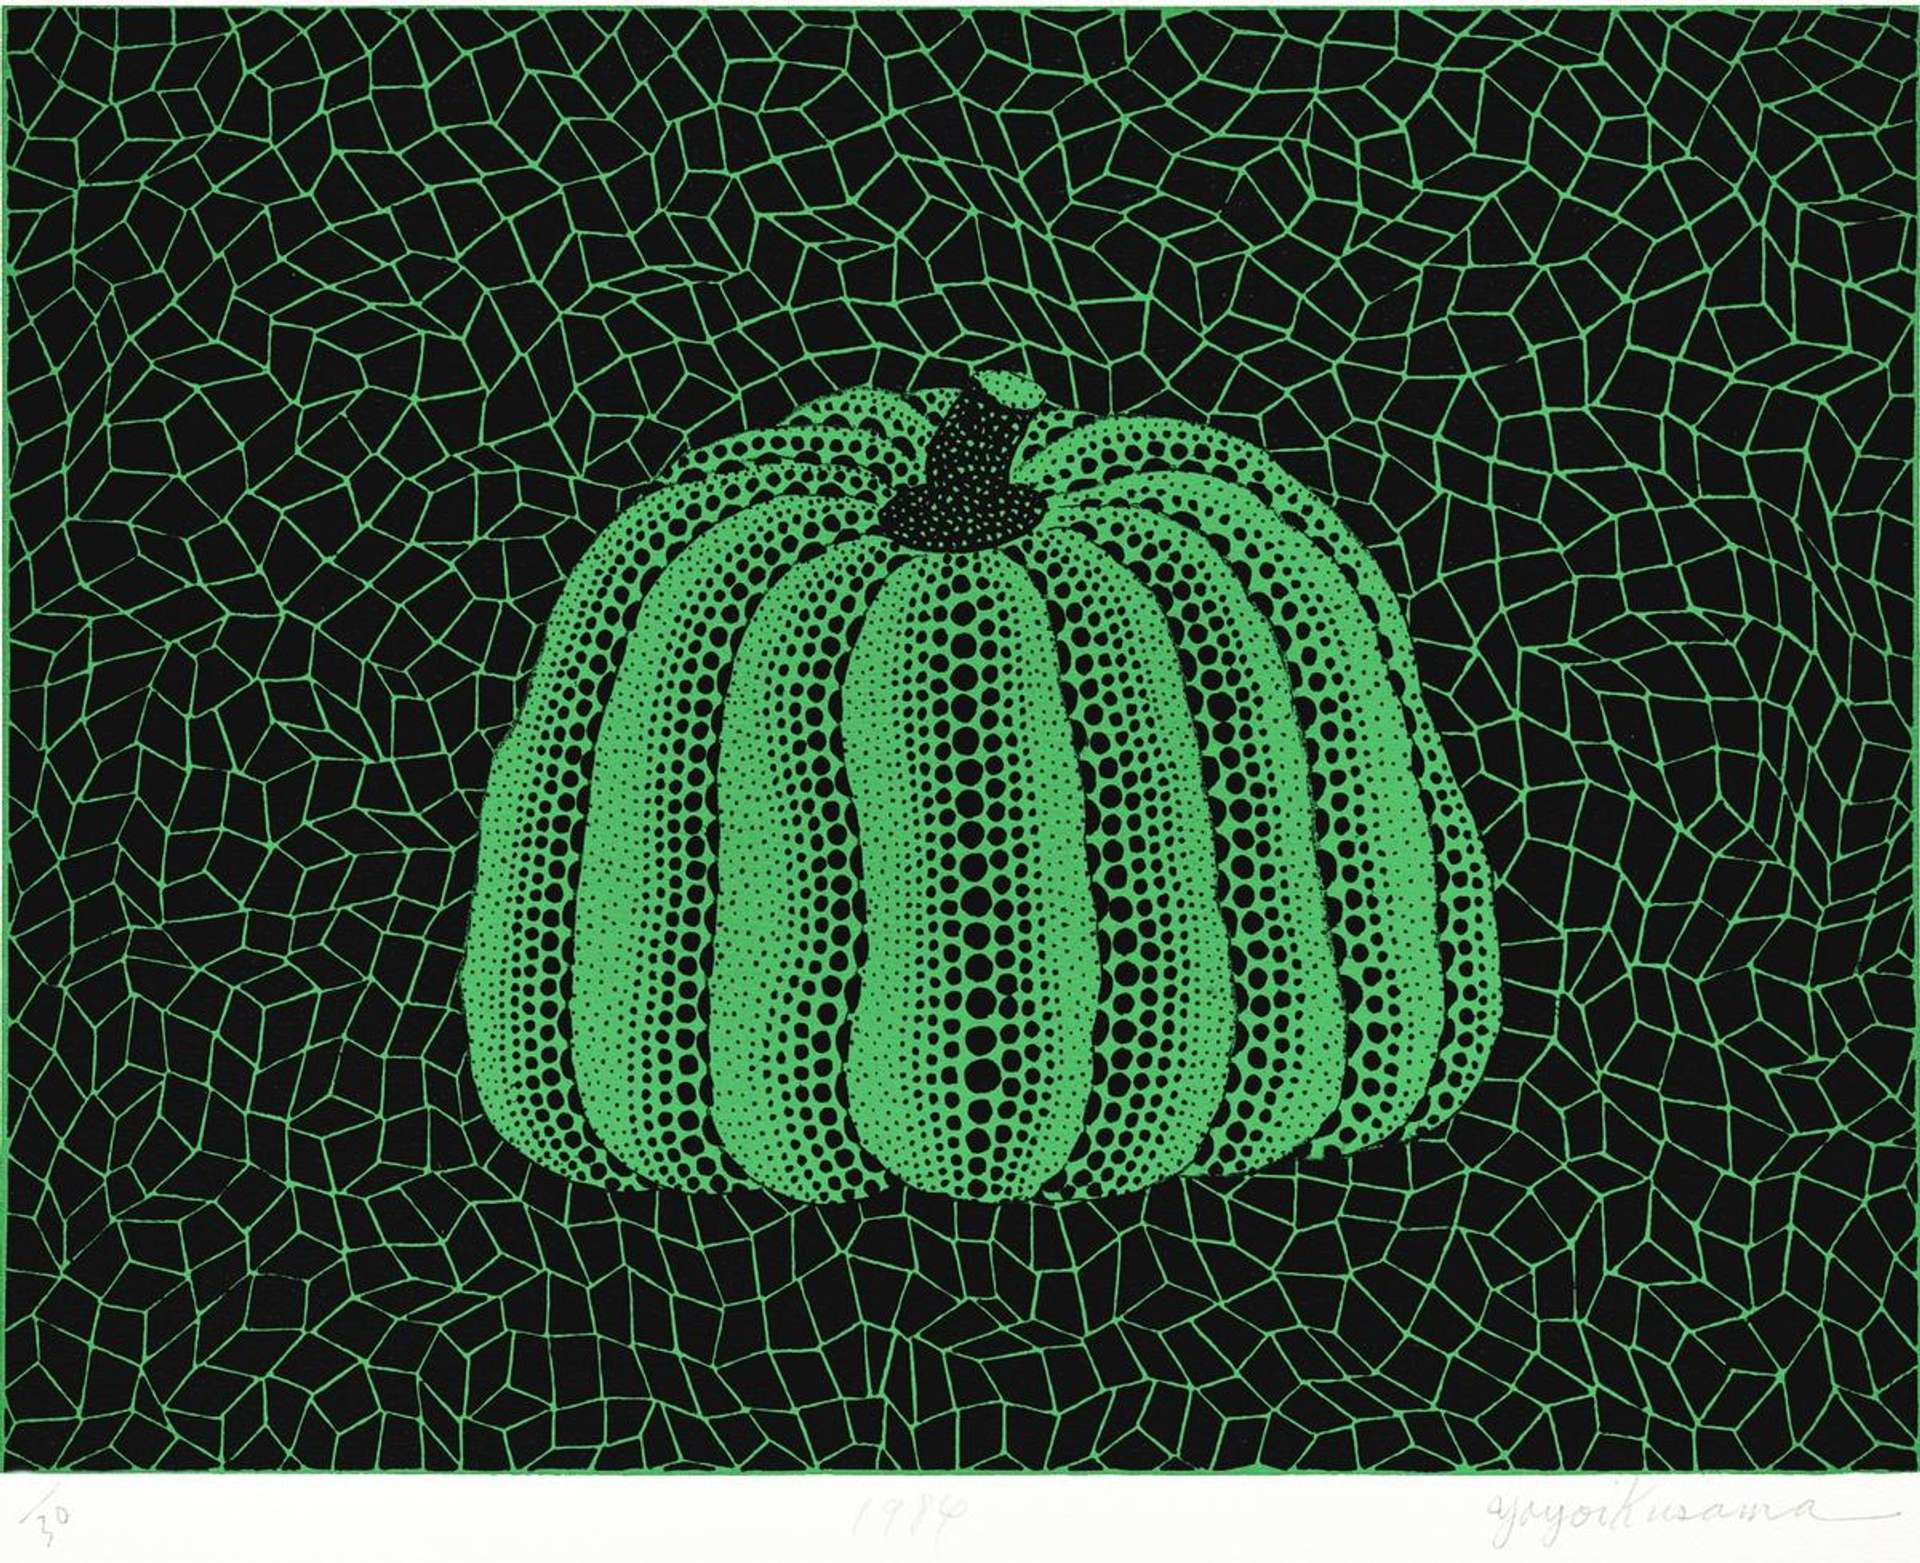 Yayoi Kusama: Pumpkin (green) - Signed Print